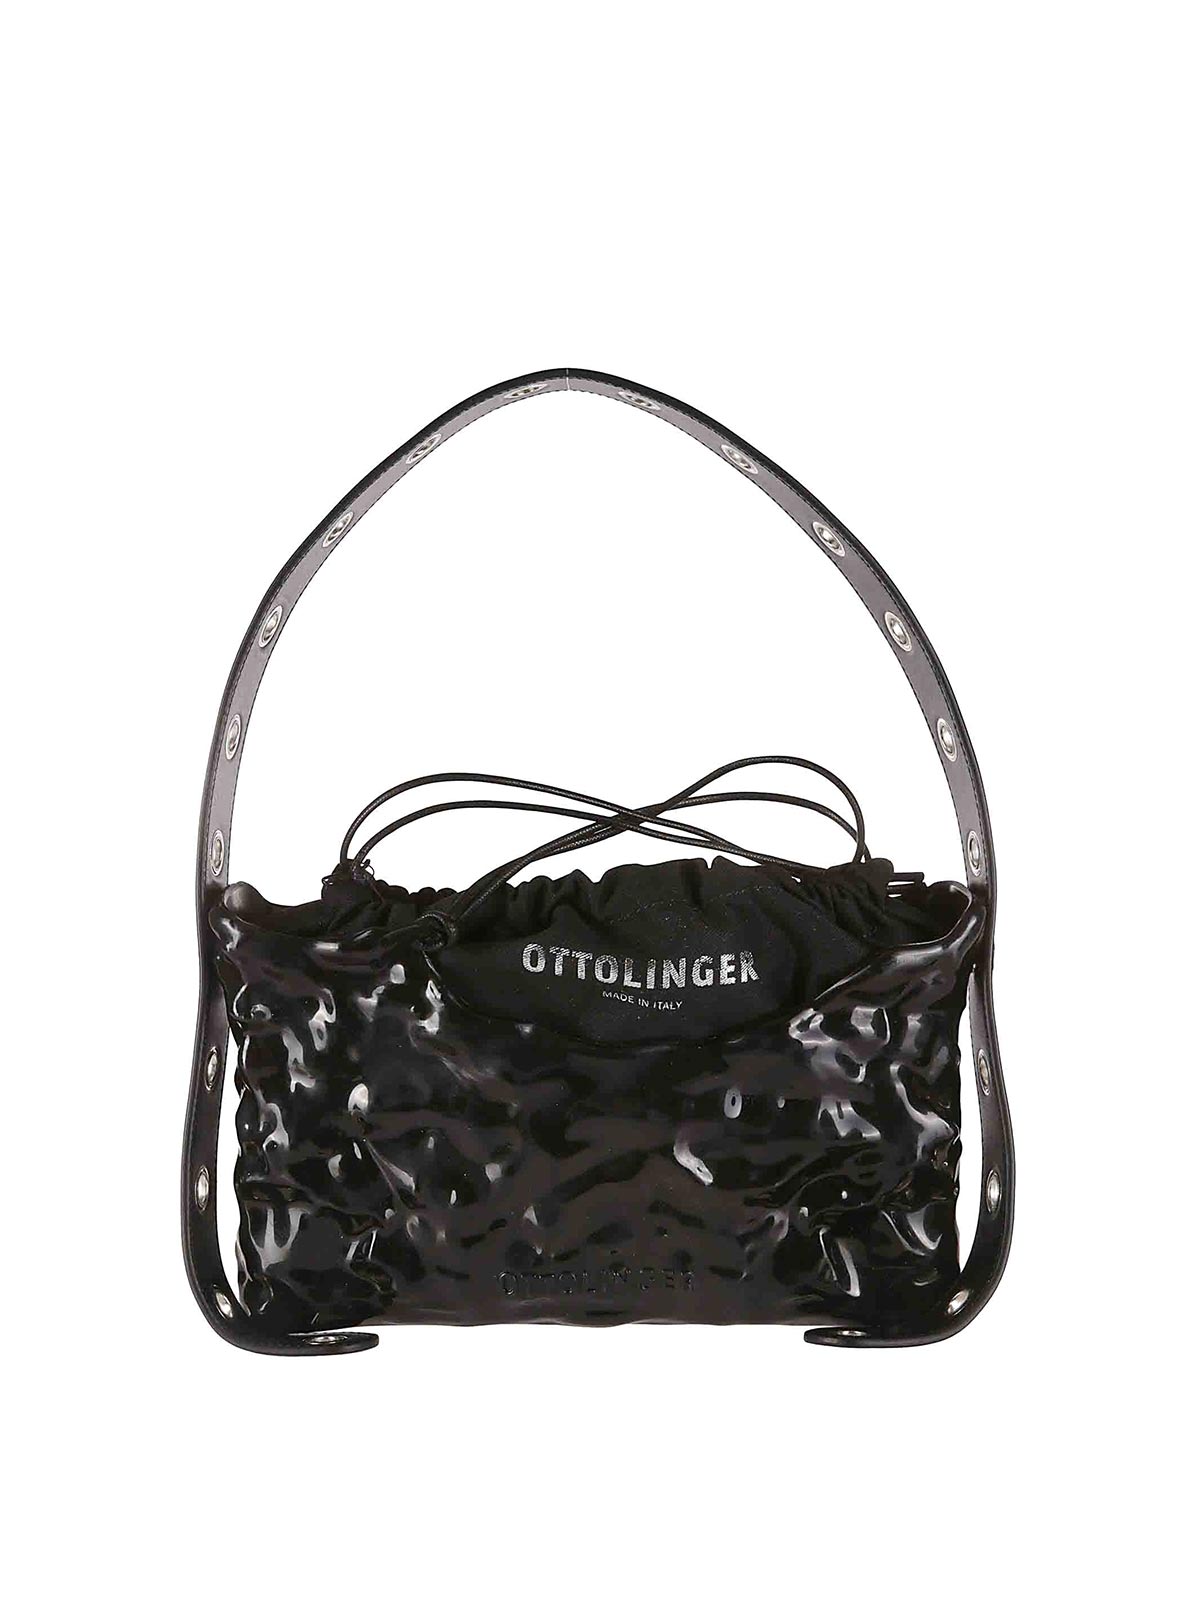 Ottolinger Signature Baguette Bag In Black